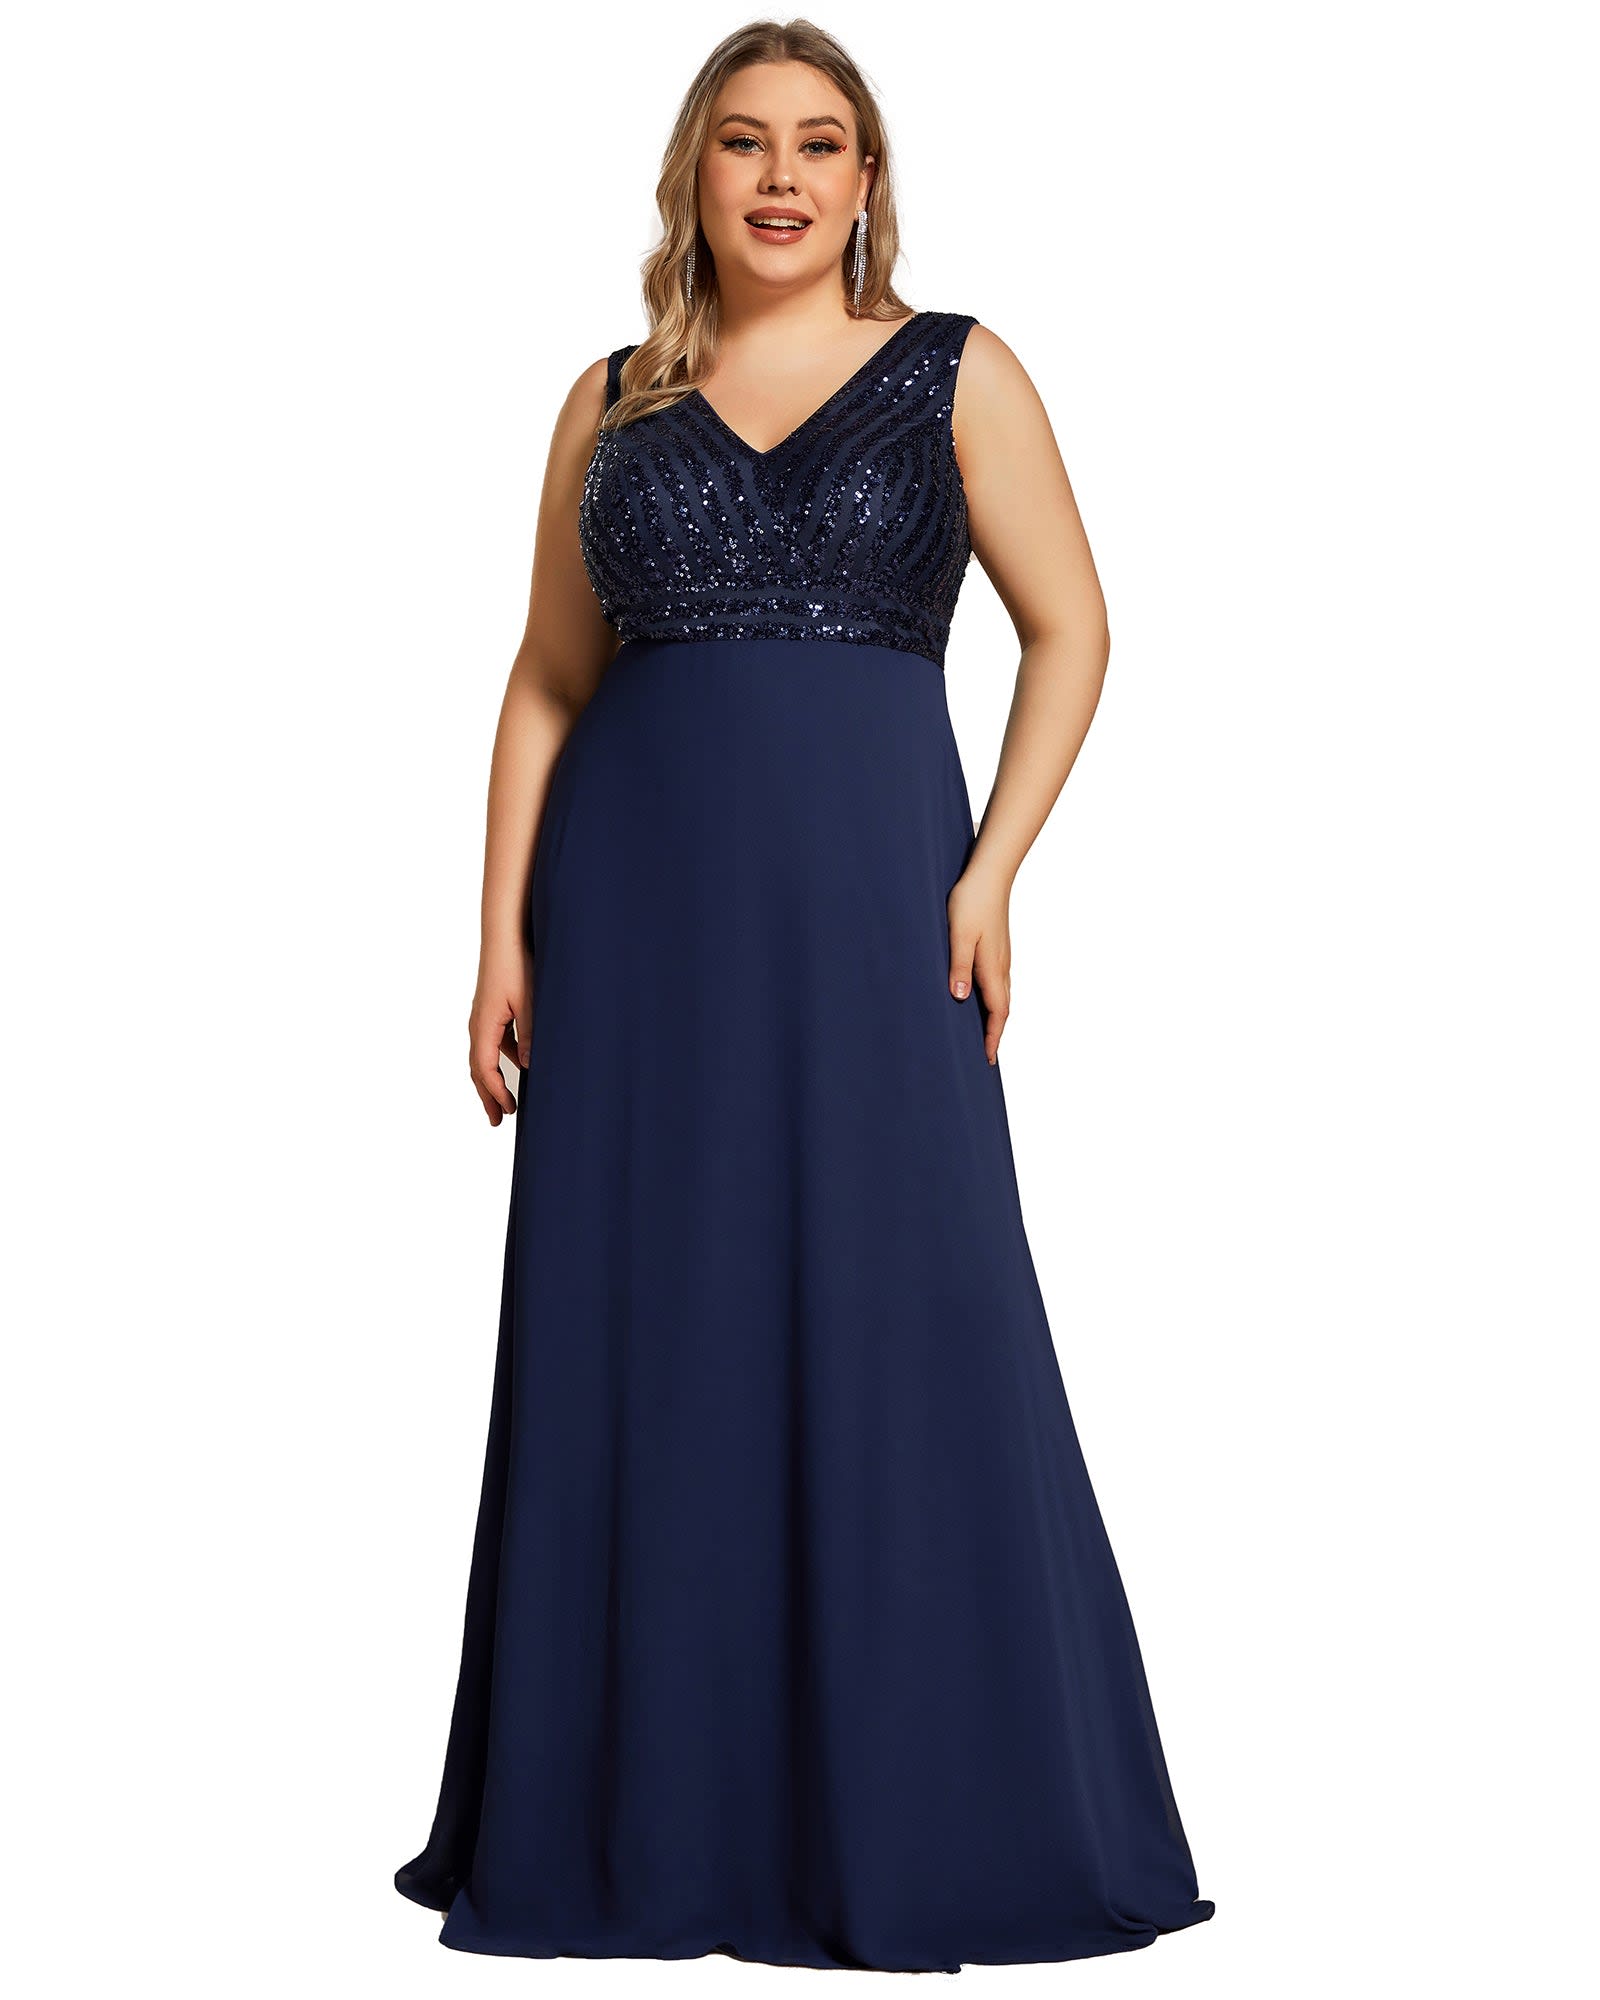 Blue Dresses For Weddings